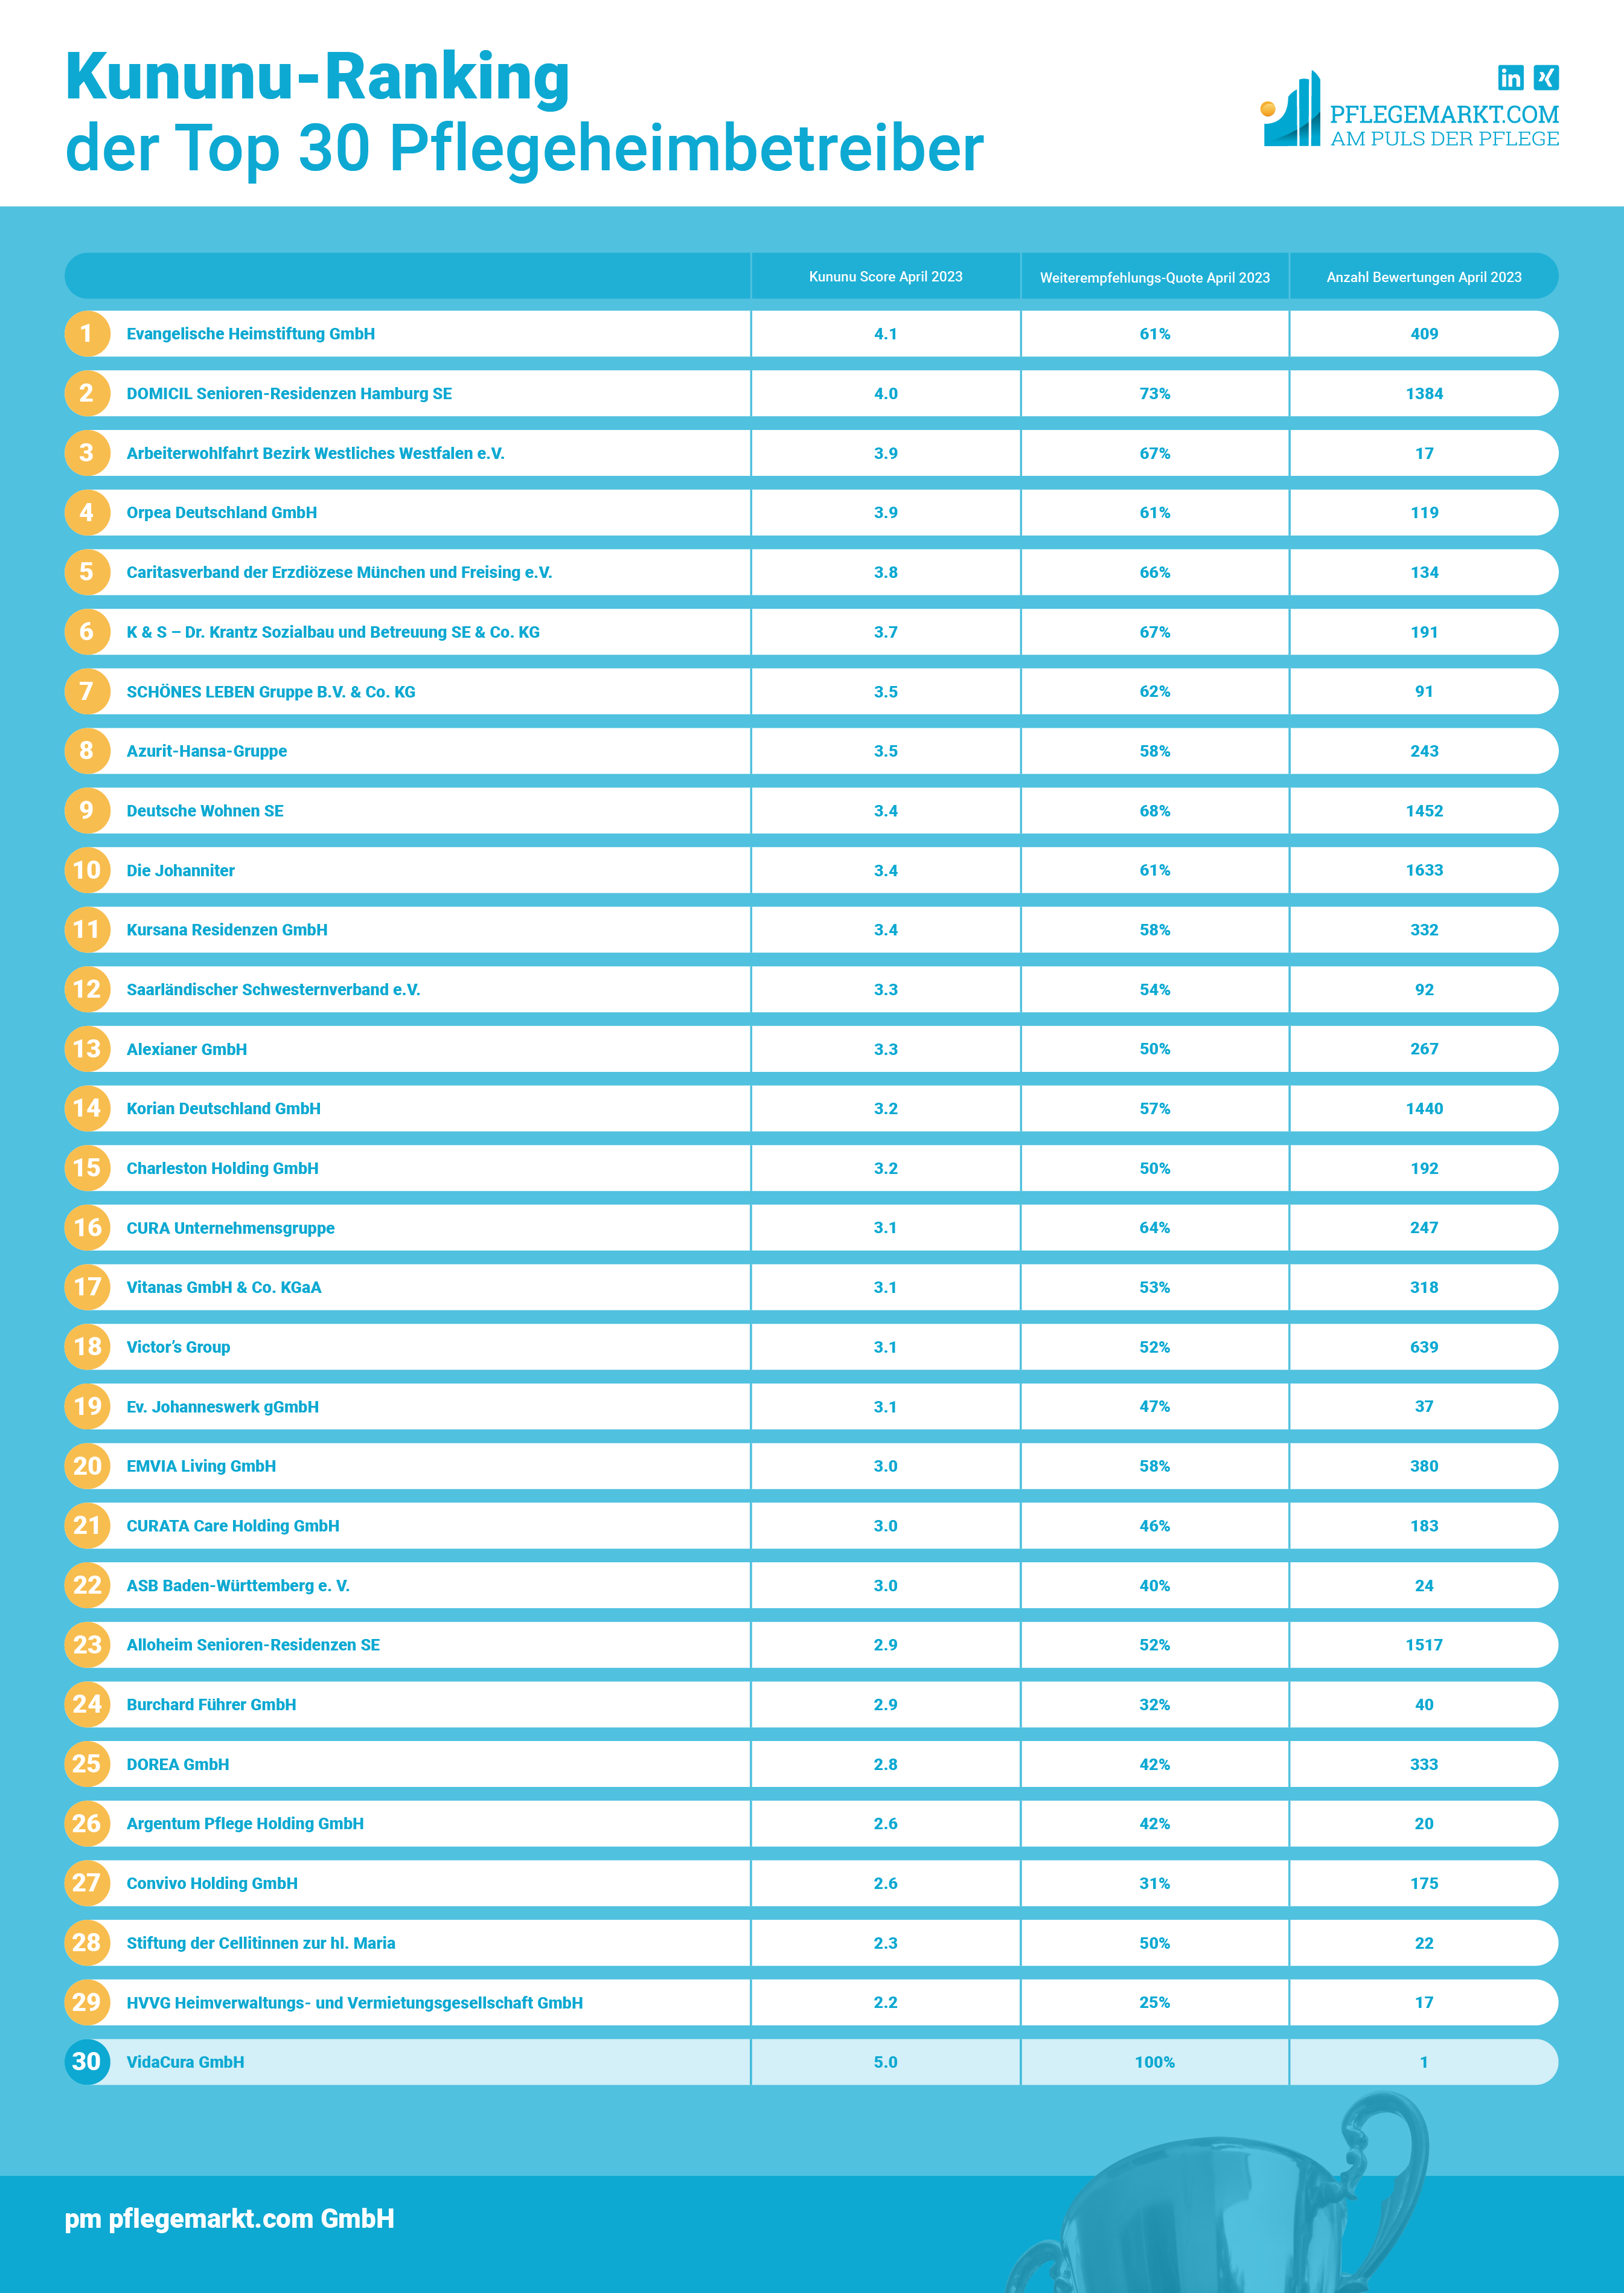 Arbeitgeberbewertung - Der Vergleich der Top 30 Pflegeheimbetreiber 2023 auf Basis des Kununu Scores zeigt eine große Bandbreite der Bewertungen - von 4,1 bis 2,2 Sternen ist eine große Bandbreite vorhanden. Auch die Weiterempfehlungsrate schwankt zwischen 25 und 73 Prozent. Natürlich hat auch die Anzahl der Mitarbeiter eines Unternehmens - und damit die Anzahl der möglichen Bewertungen - einen Einfluss auf das Ranking. Dennoch erweist sich das Ranking insgesamt als recht aussagekräftig. Nur 10 der 30 Anbieter haben weniger als 100 Bewertungen.